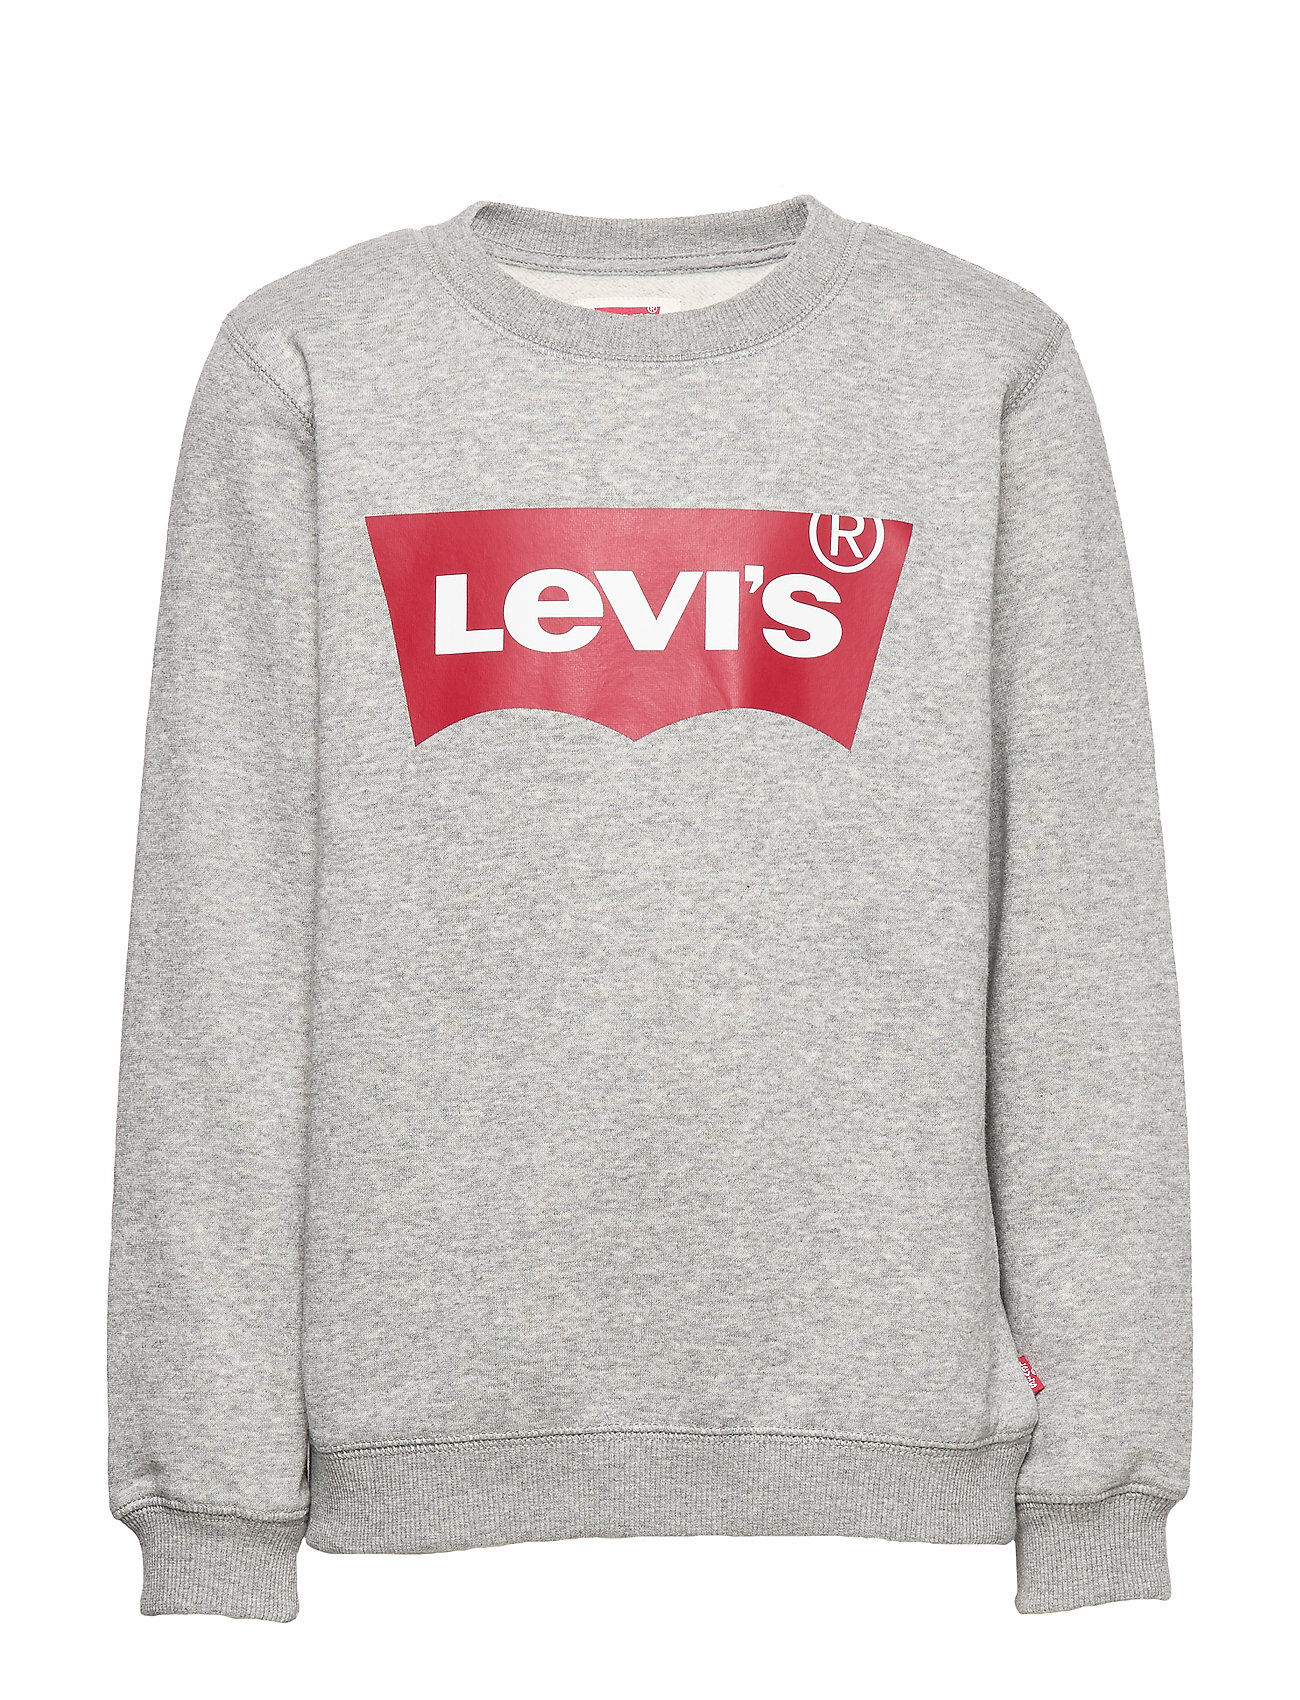 Levi's Sweat Shirt Sweat-shirt Genser Grå Levi's